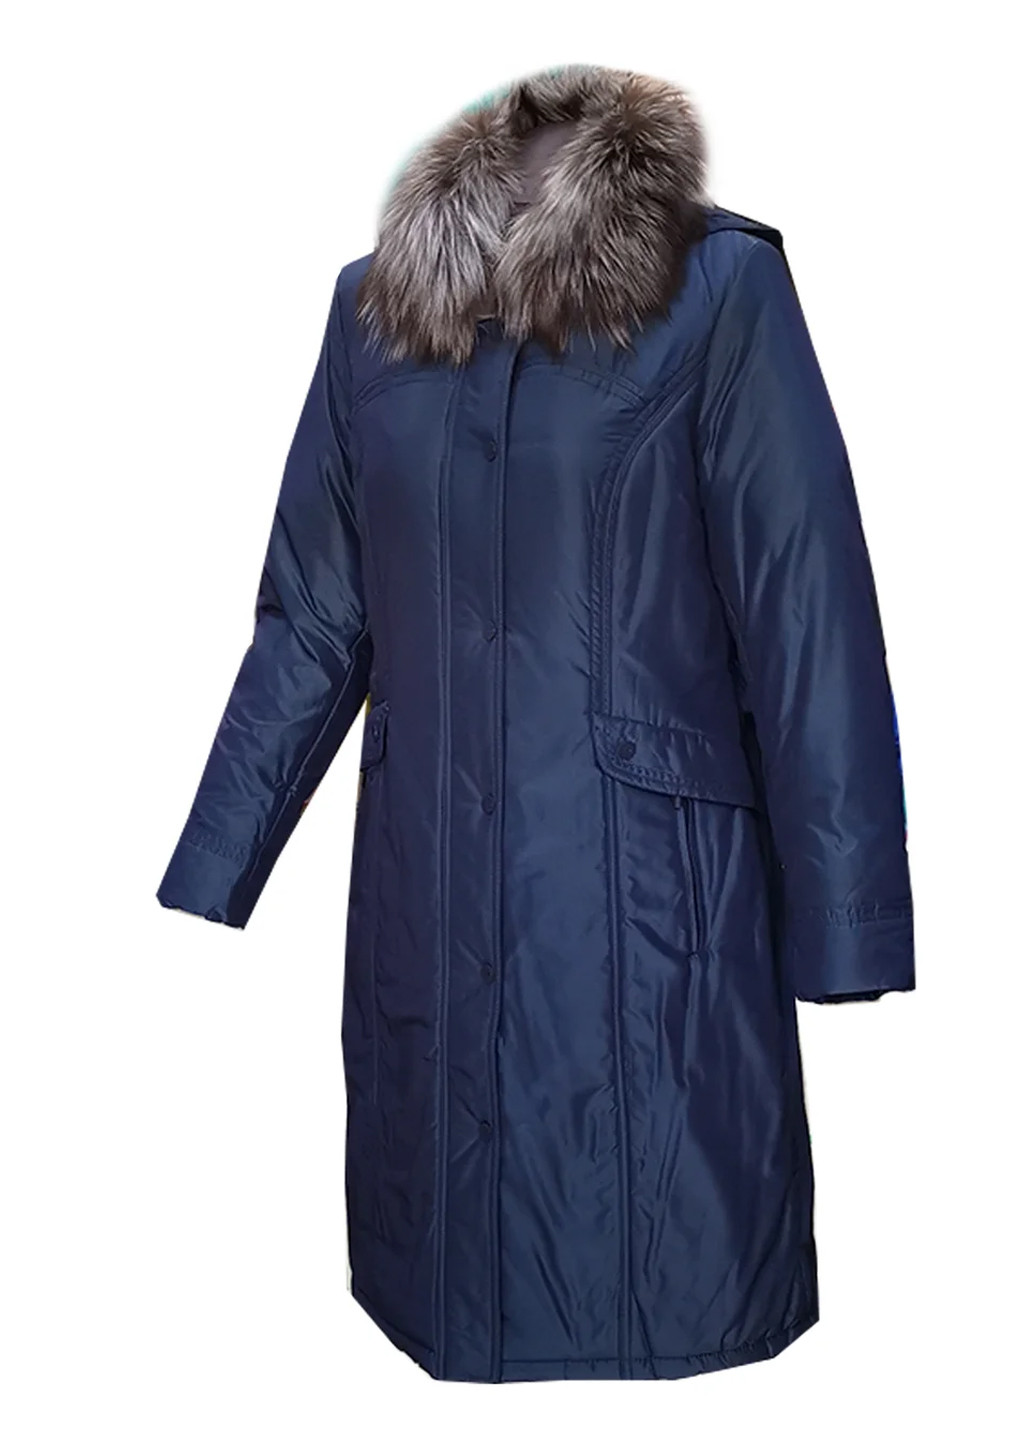 Синее зимнее Пуховик пальто с капюшоном с мехом чернобурки City Classic